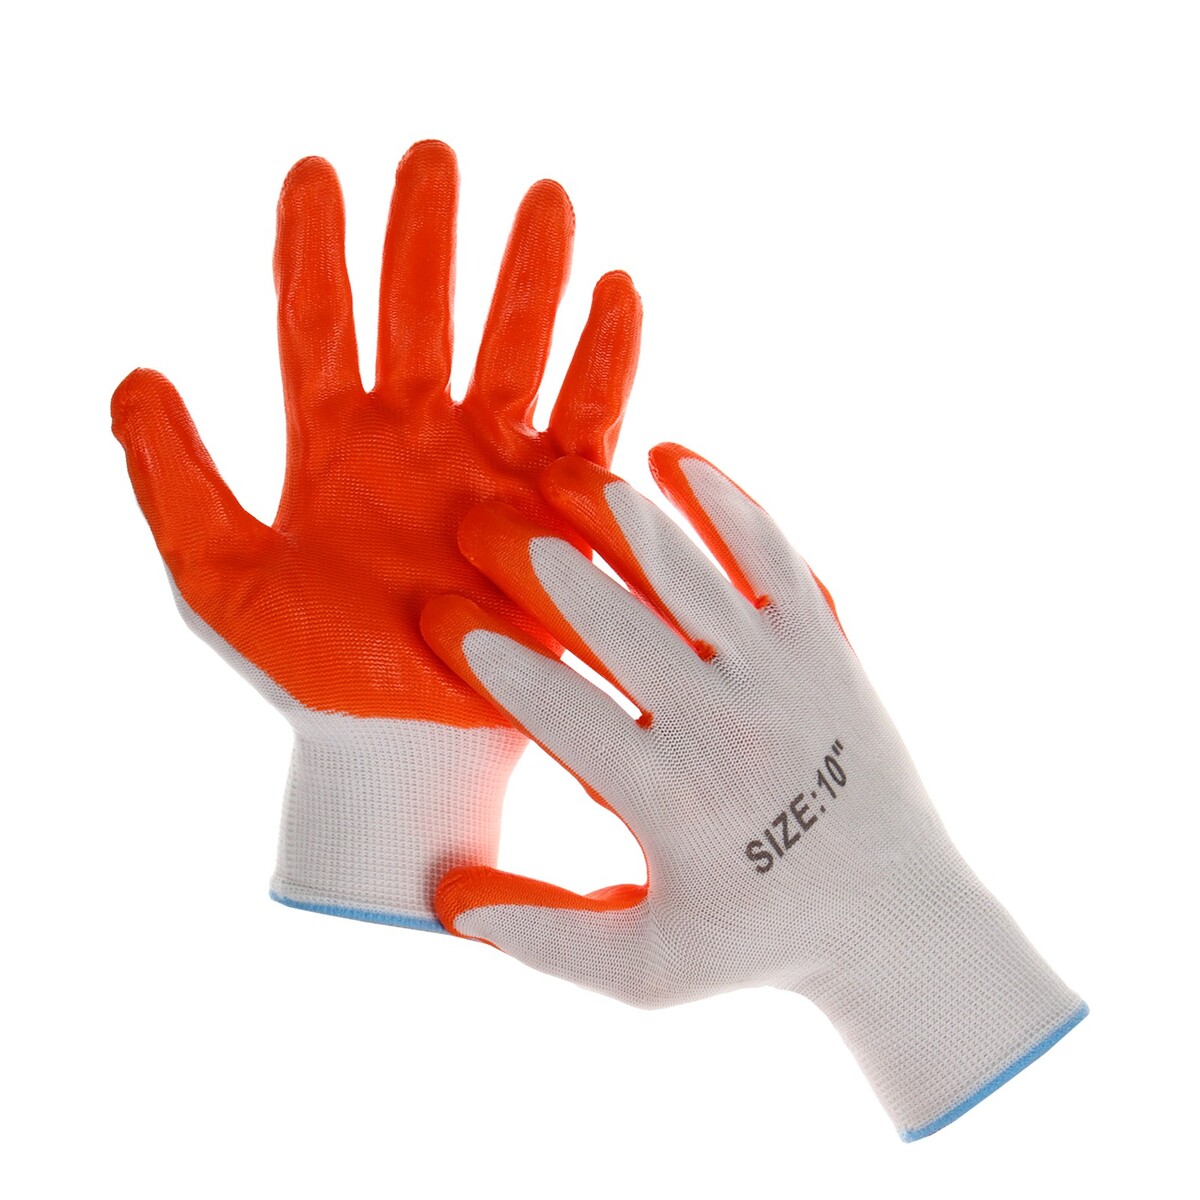 Перчатки садовые, нейлоновые, с нитриловым полуобливом, размер 10, оранжевые, greengo перчатки вратарские р 6 оранжевый